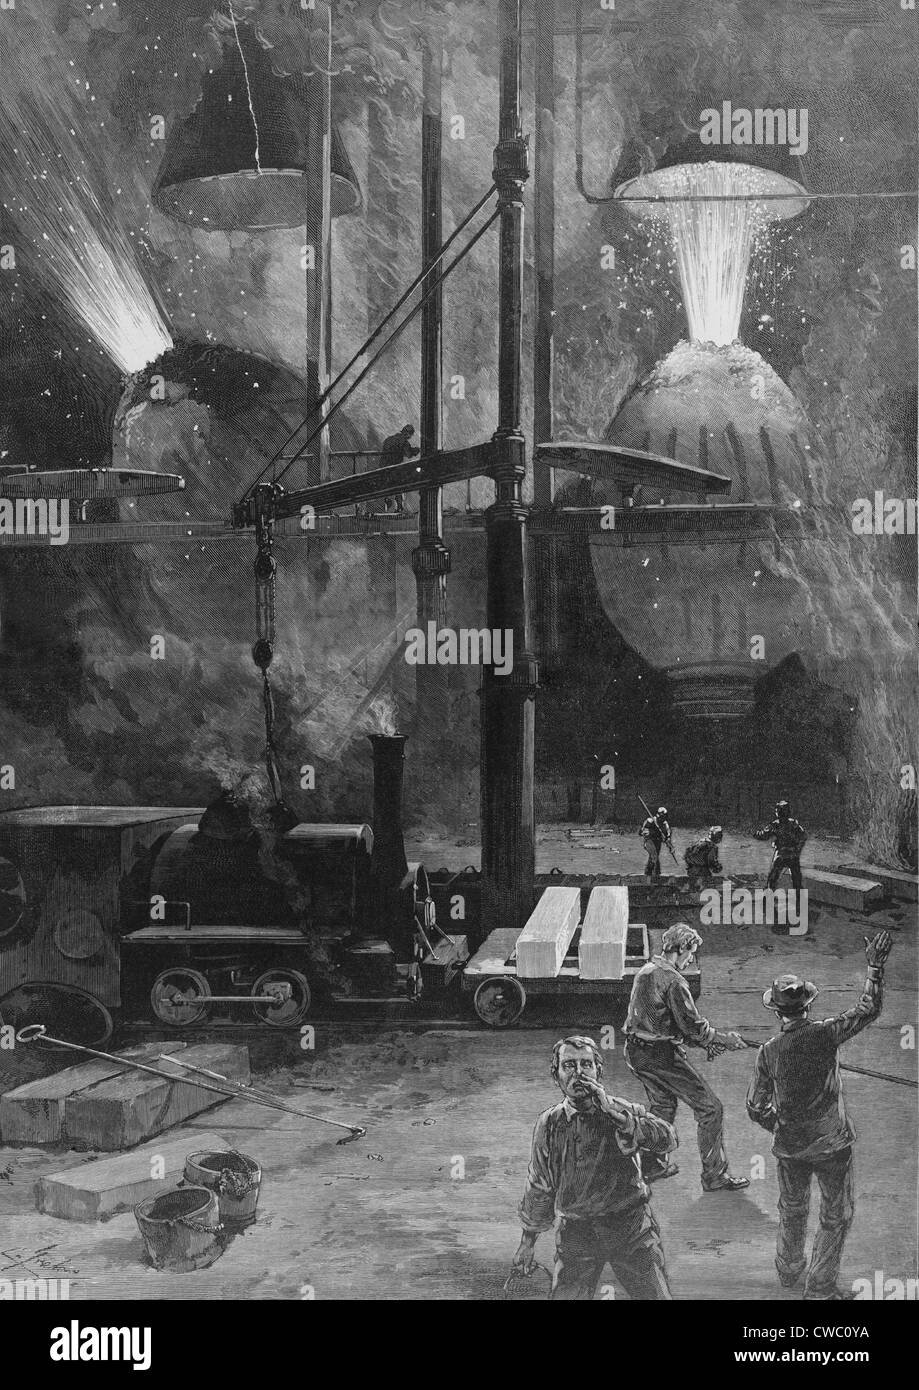 La fabrication d'acier avec des convertisseurs Bessemer à Pittsburgh, en Pennsylvanie. La gravure sur bois à partir d'un dessin de Charles Graham. 1886. Banque D'Images